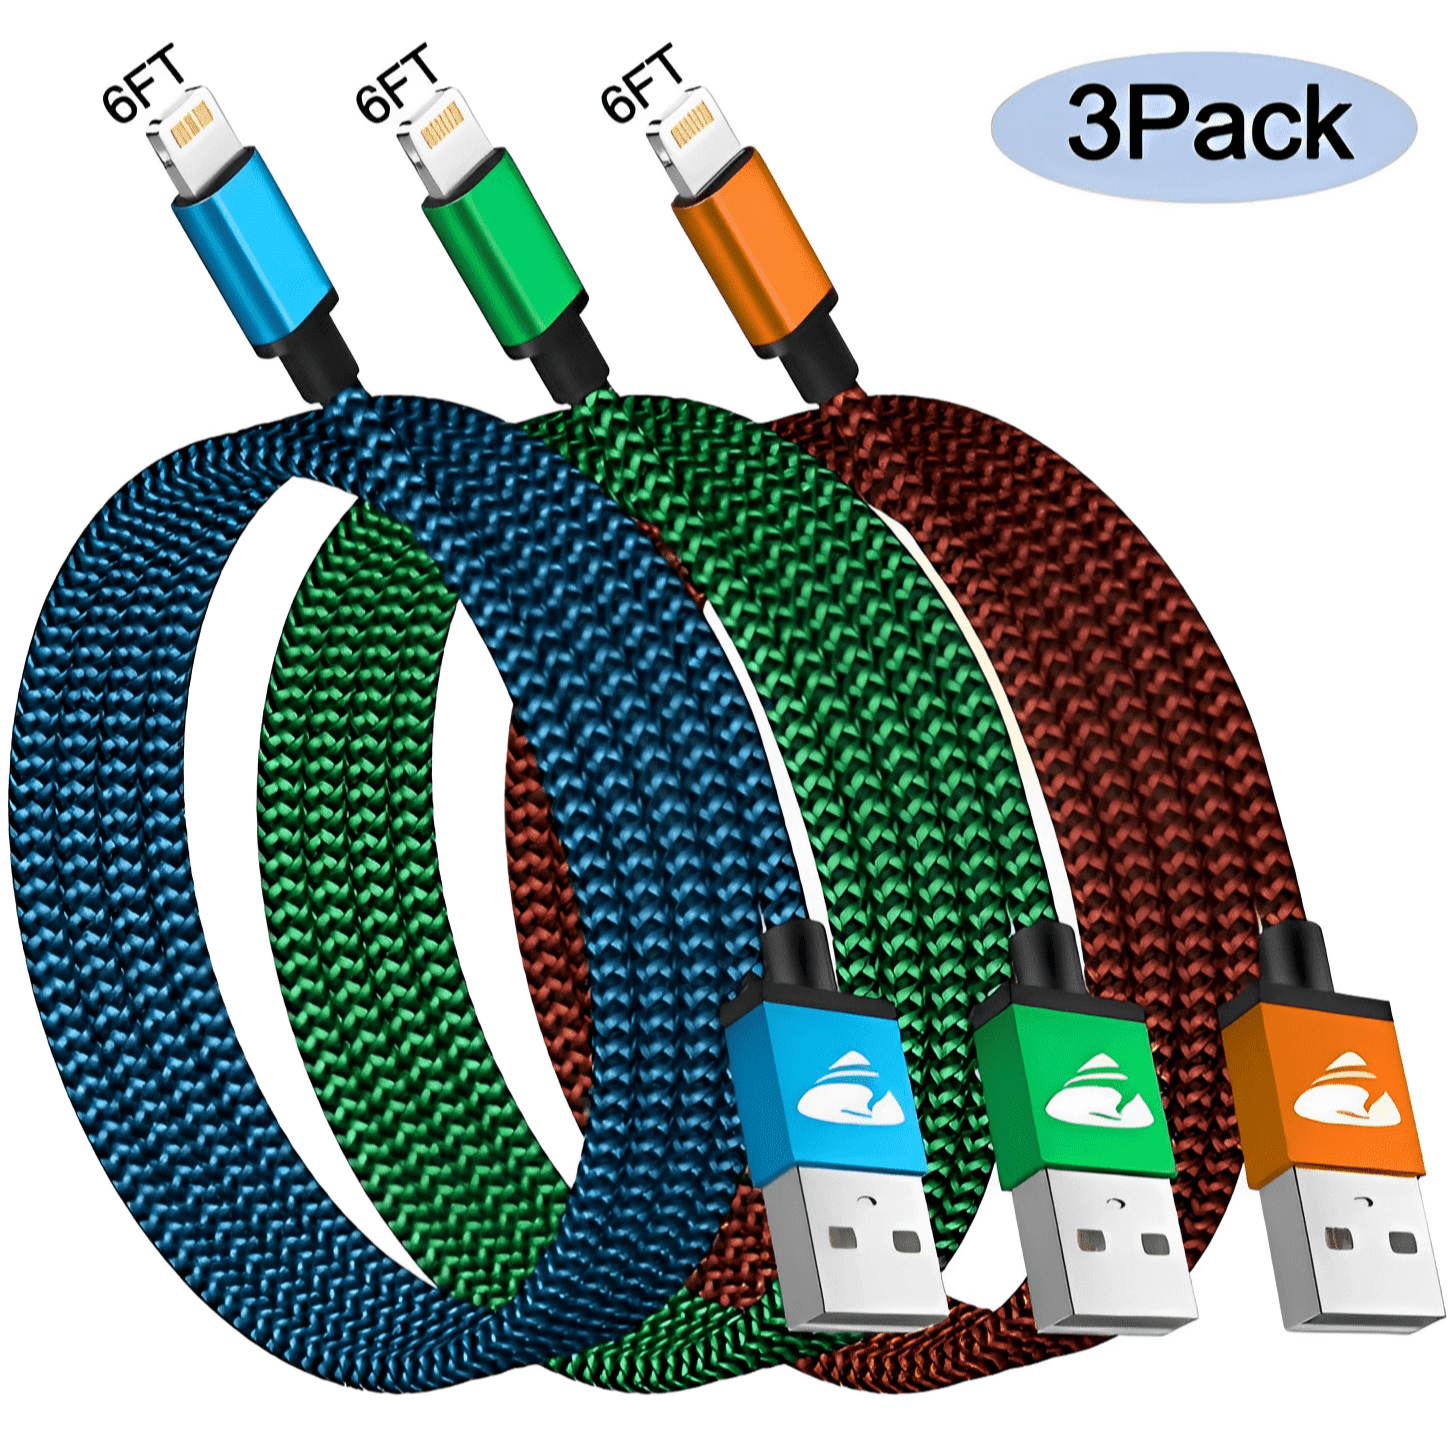 Lot 3 Cables USB Lightning Chargeur Blanc pour Apple iPhone 5 / 5S / 6 / 6S  / 6 PLUS / 6S PLUS / 7 / 7 PLUS / 8 / 8